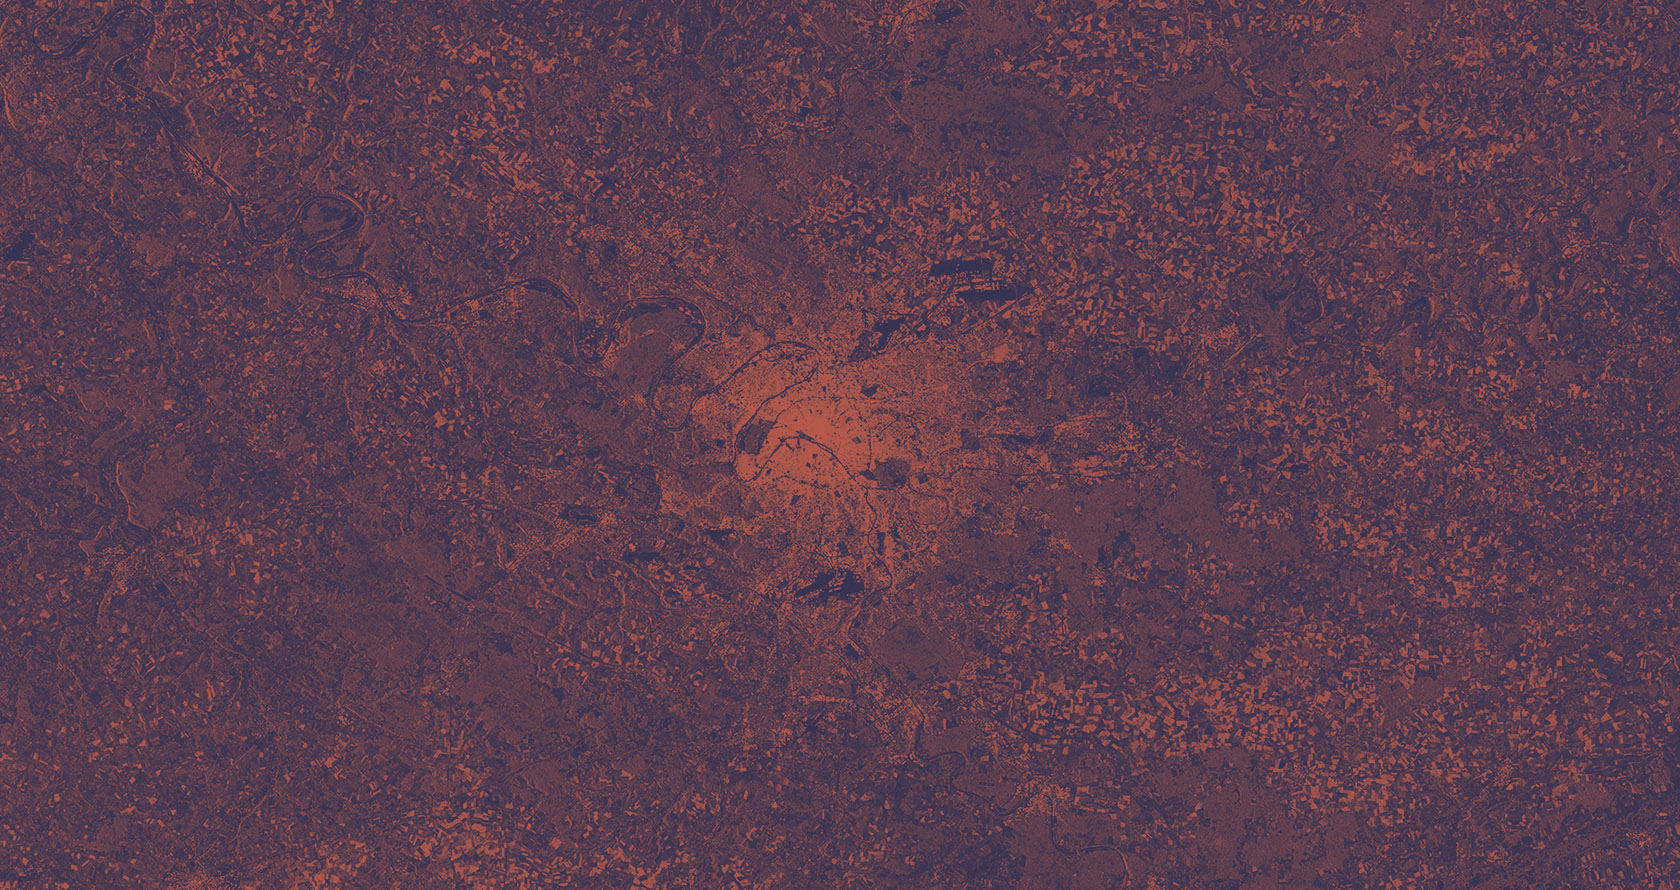 Vue satellite de la grande région parisienne